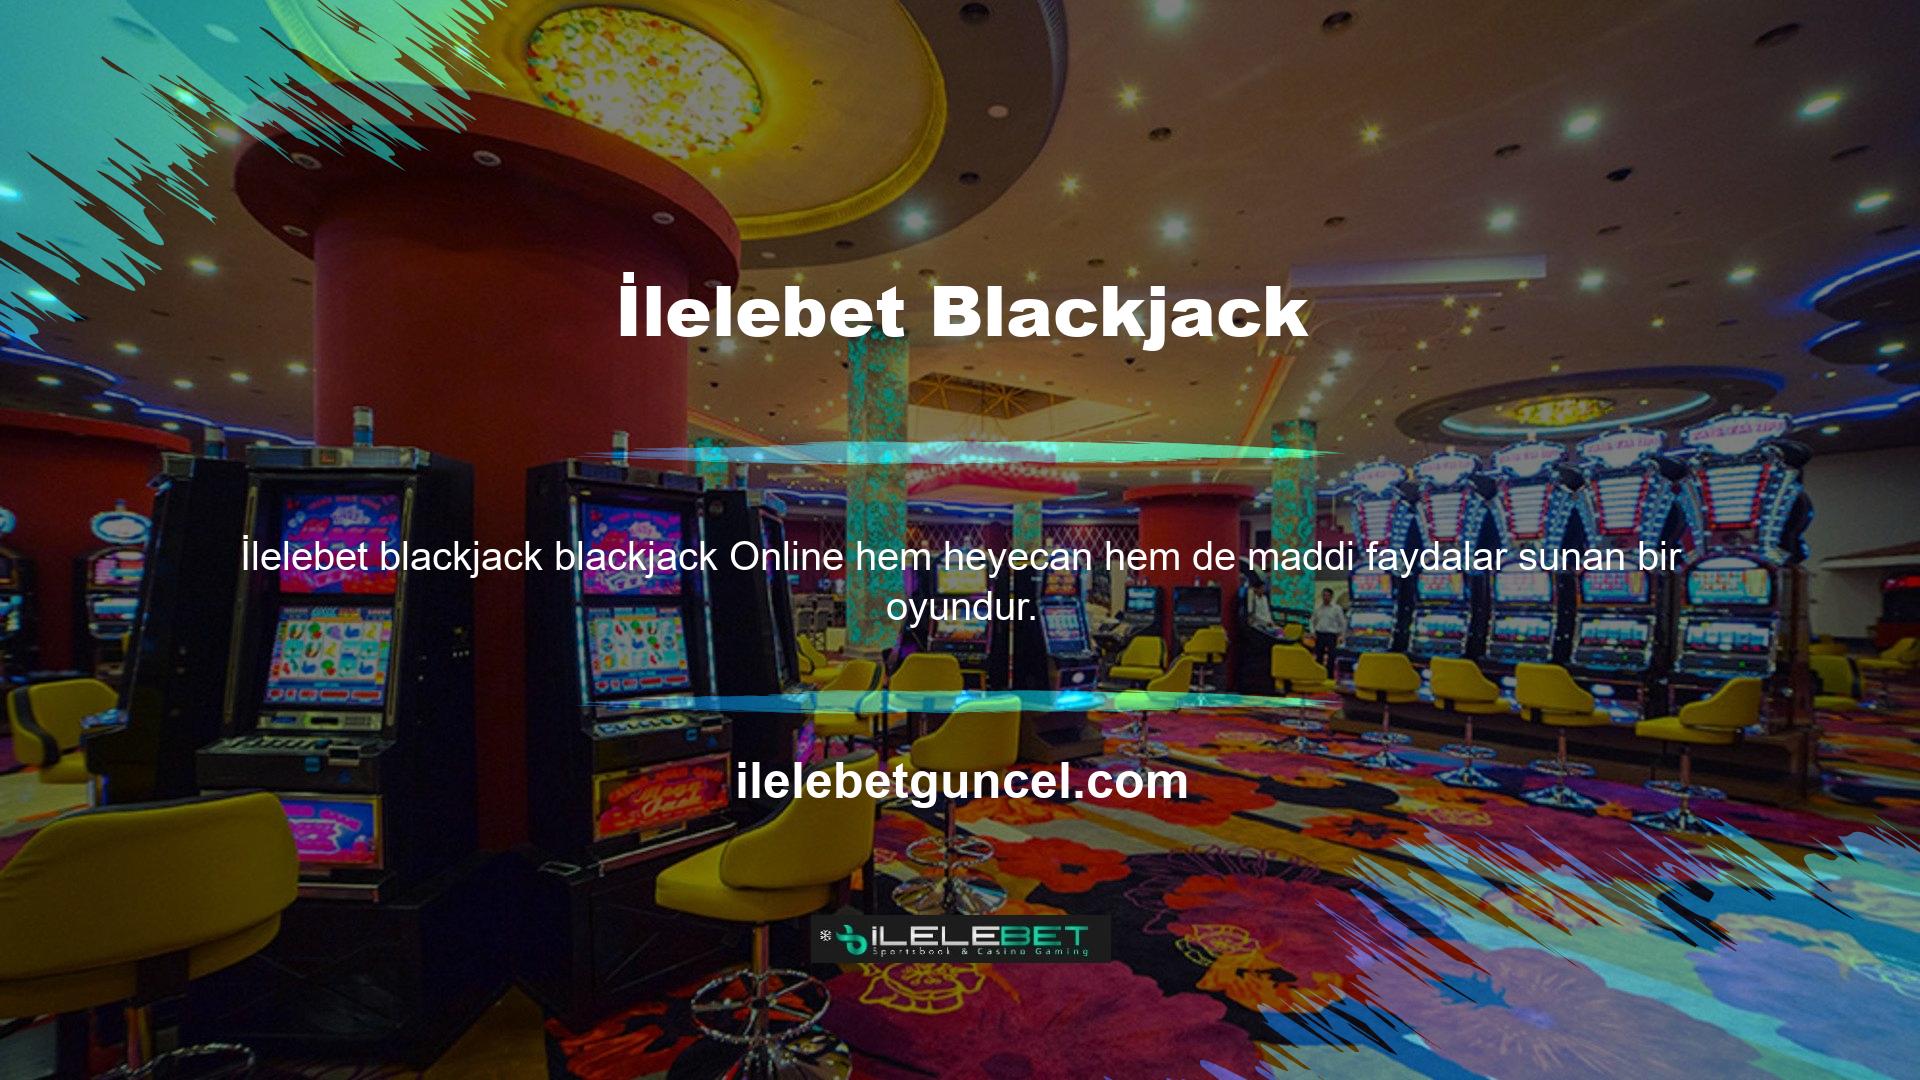 Çok sayıda blackjack oyunuyla bu casino sektördeki en olağanüstü seçeneklerden biridir